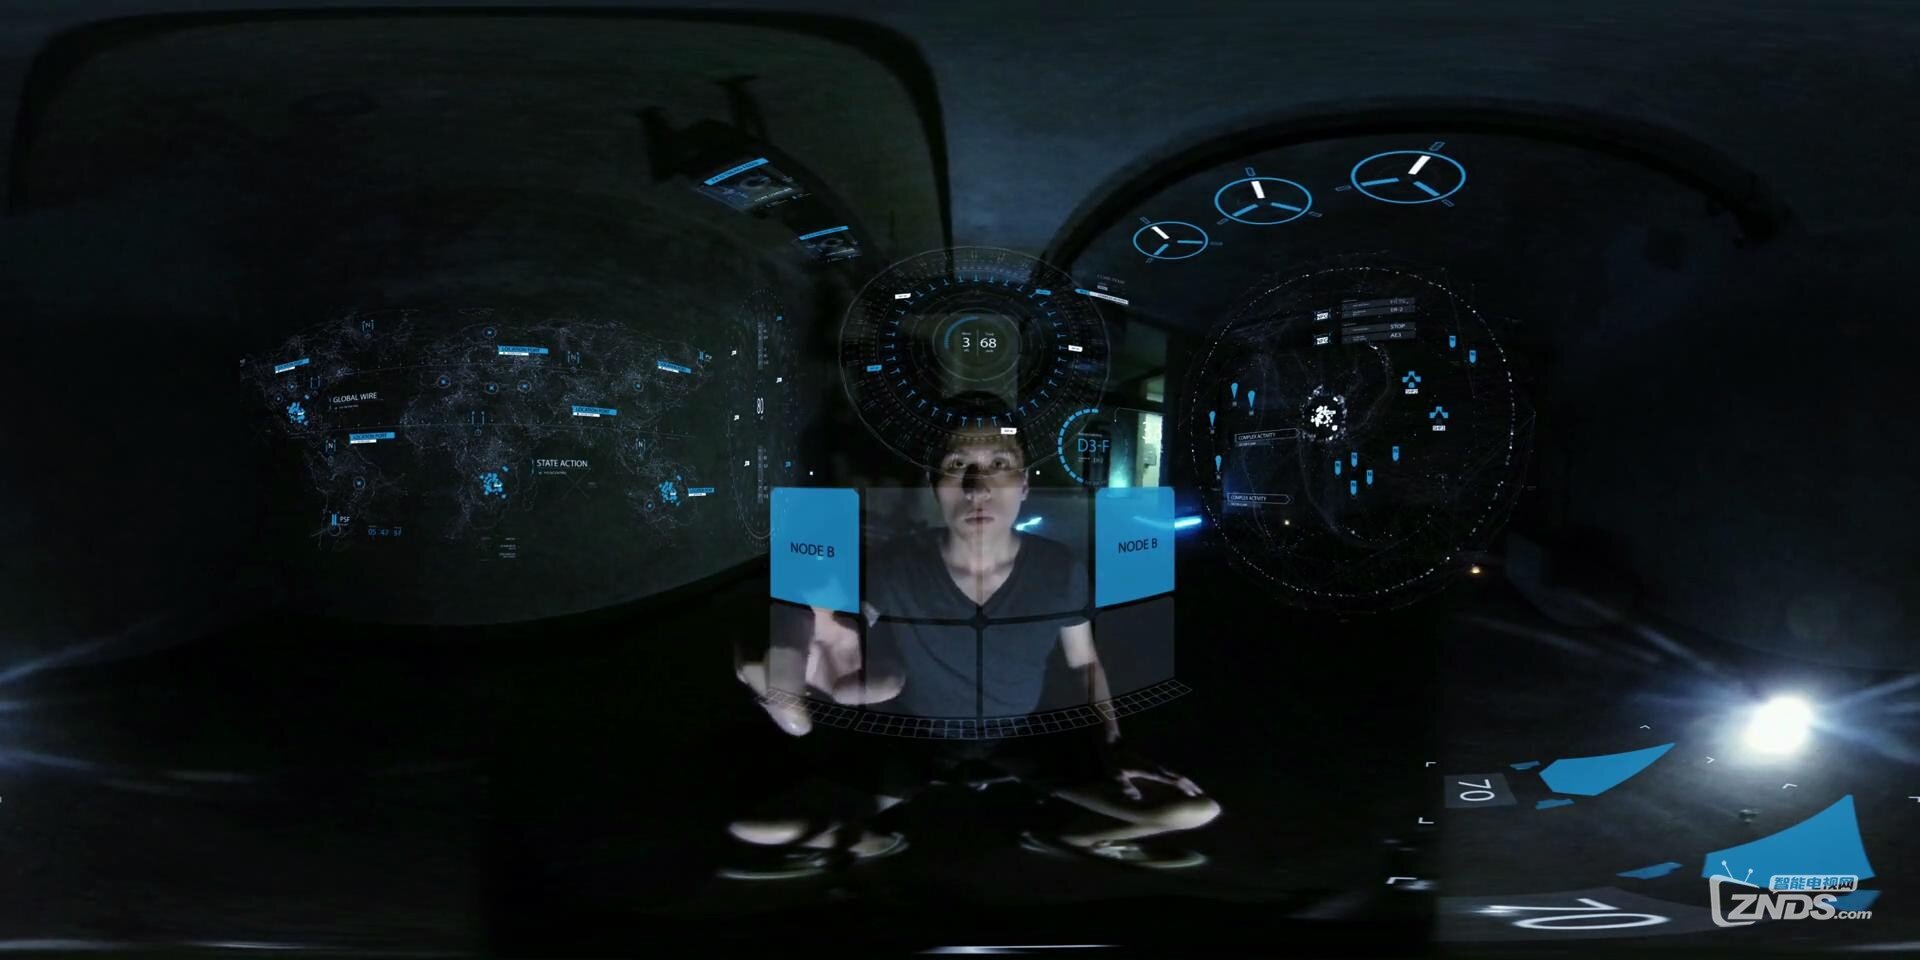 全景视频:科幻悬疑爱情VR全景微电影《虚拟现